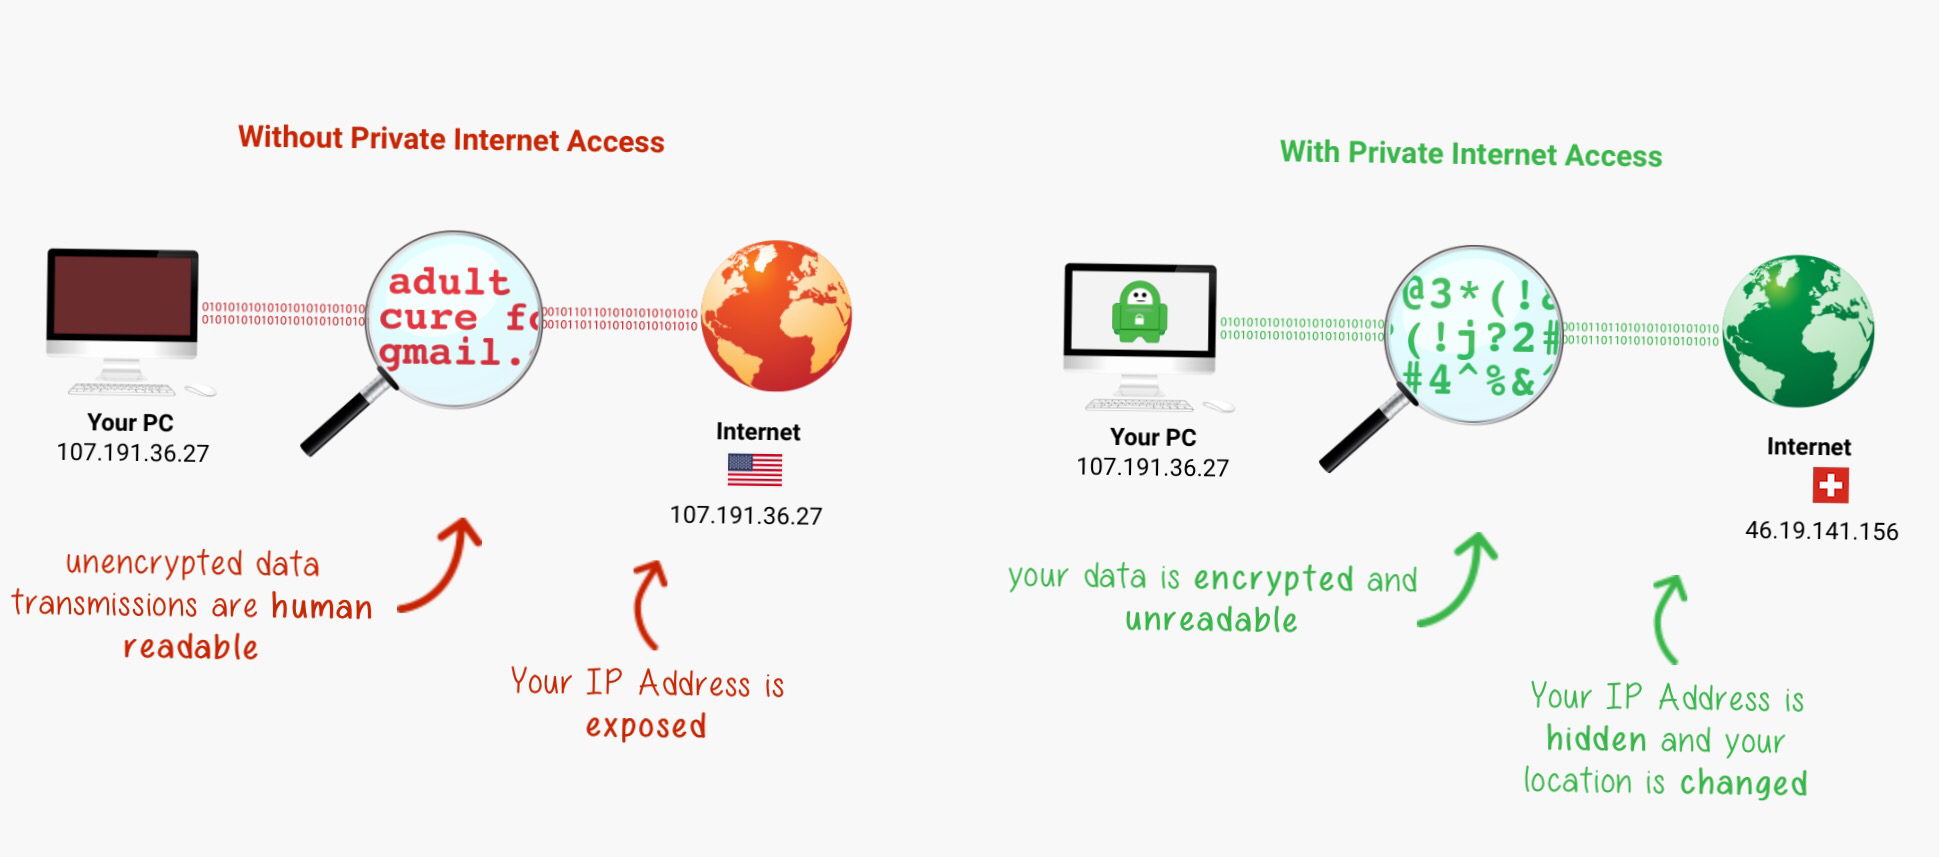 Private vpn access